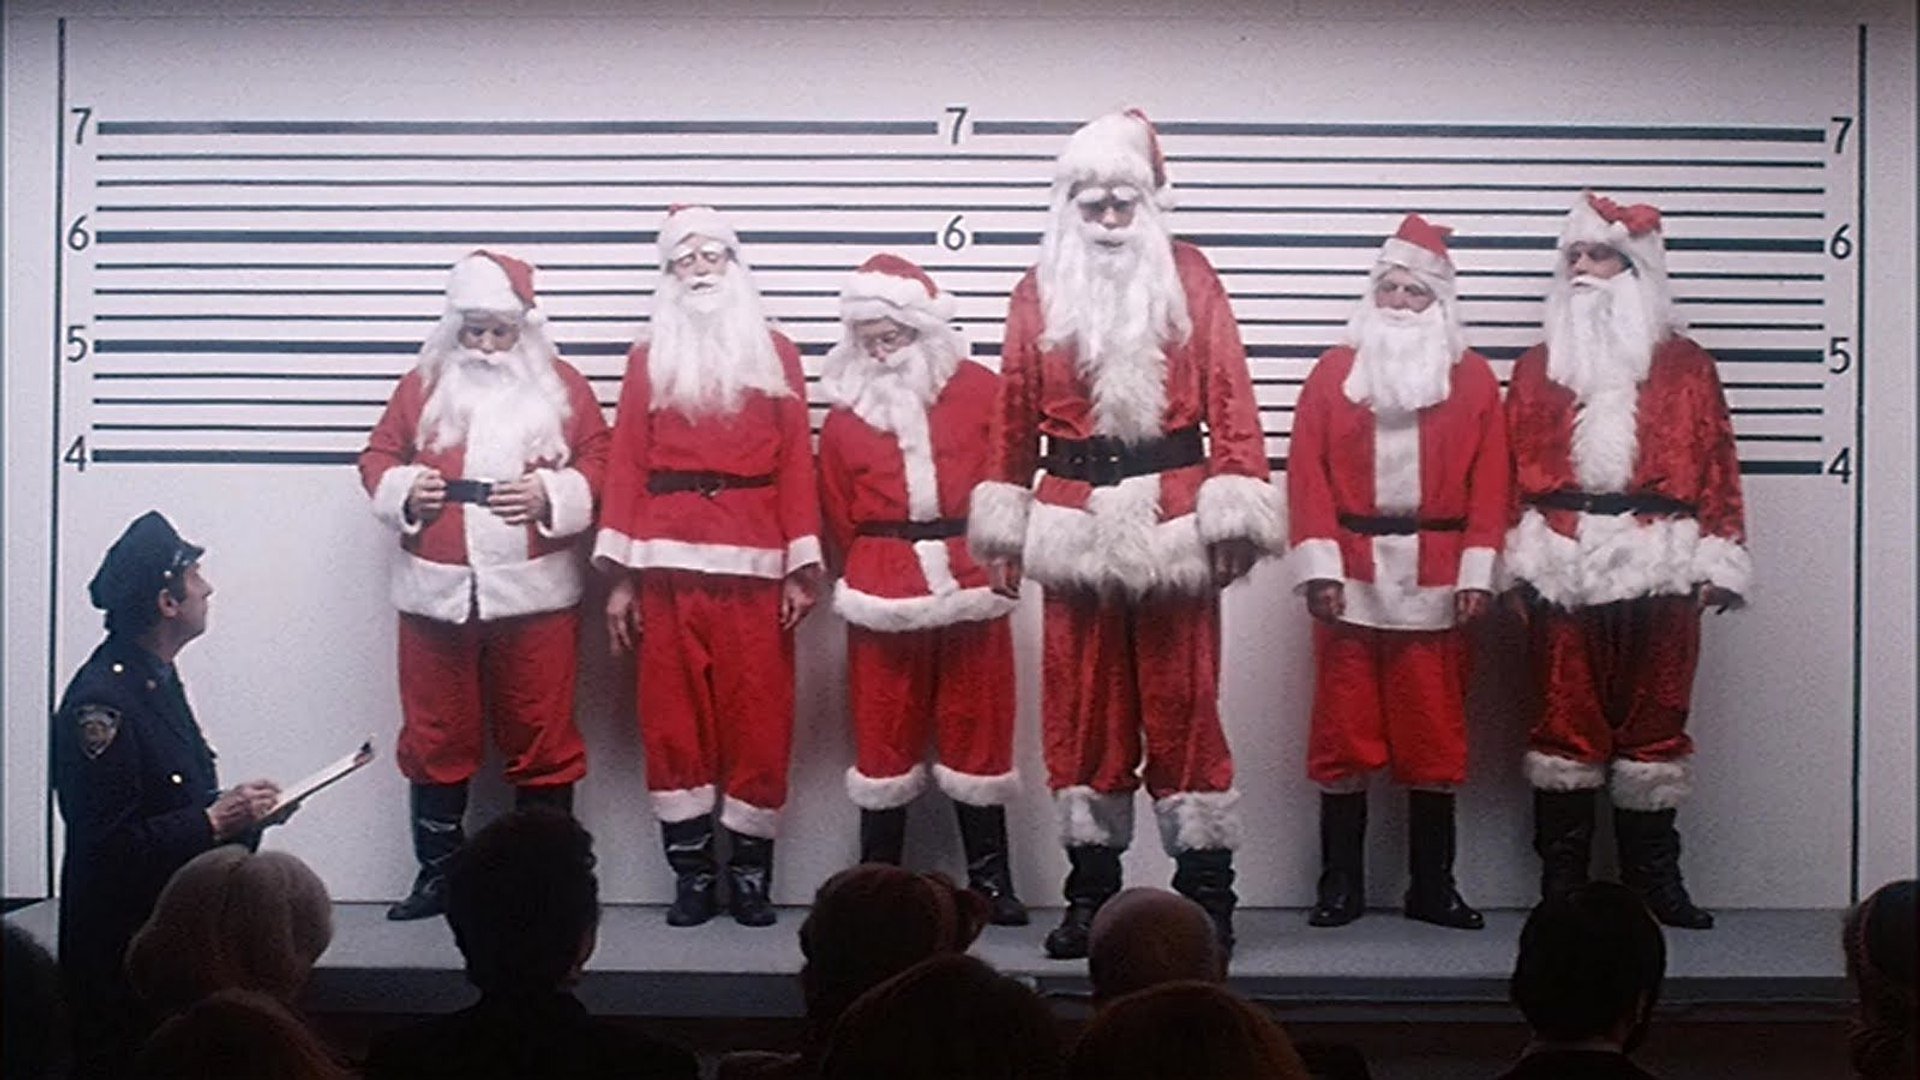 Els crims de Santa Claus contra la humanitat, segons Robert Anton Wilson